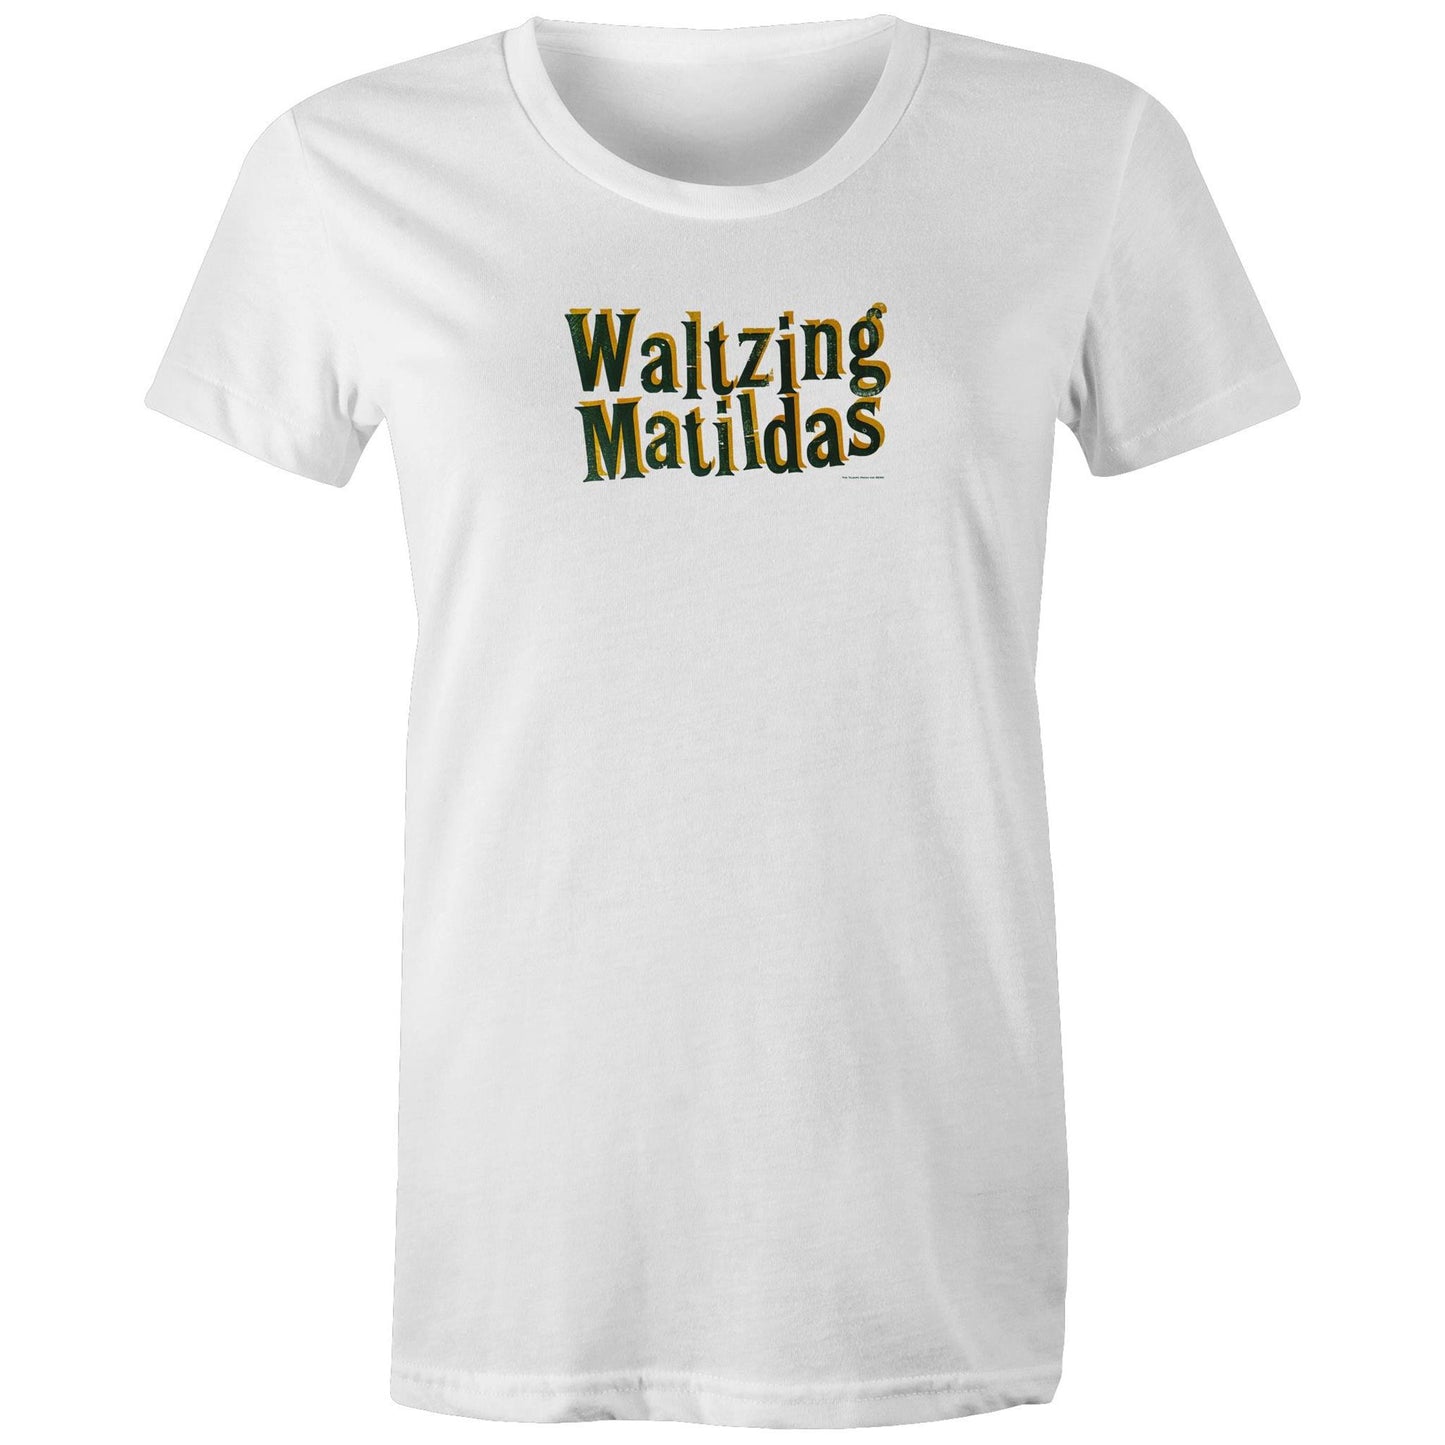 Waltzing Matildas T Shirts for Women